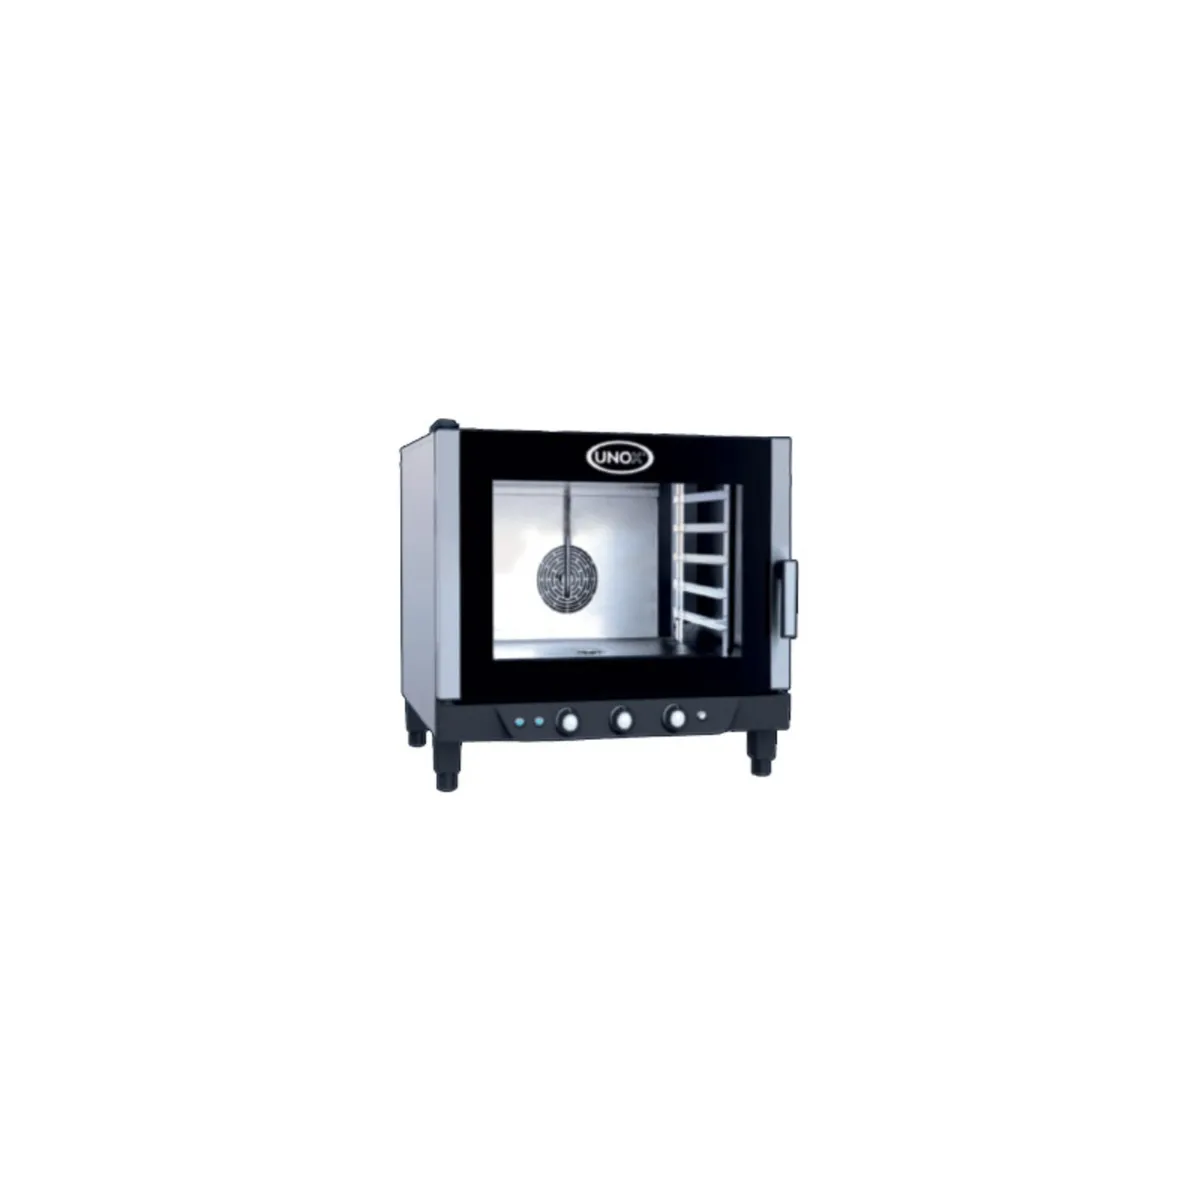 UNOX Combi Oven - 5/7/12 Racks - Image 1